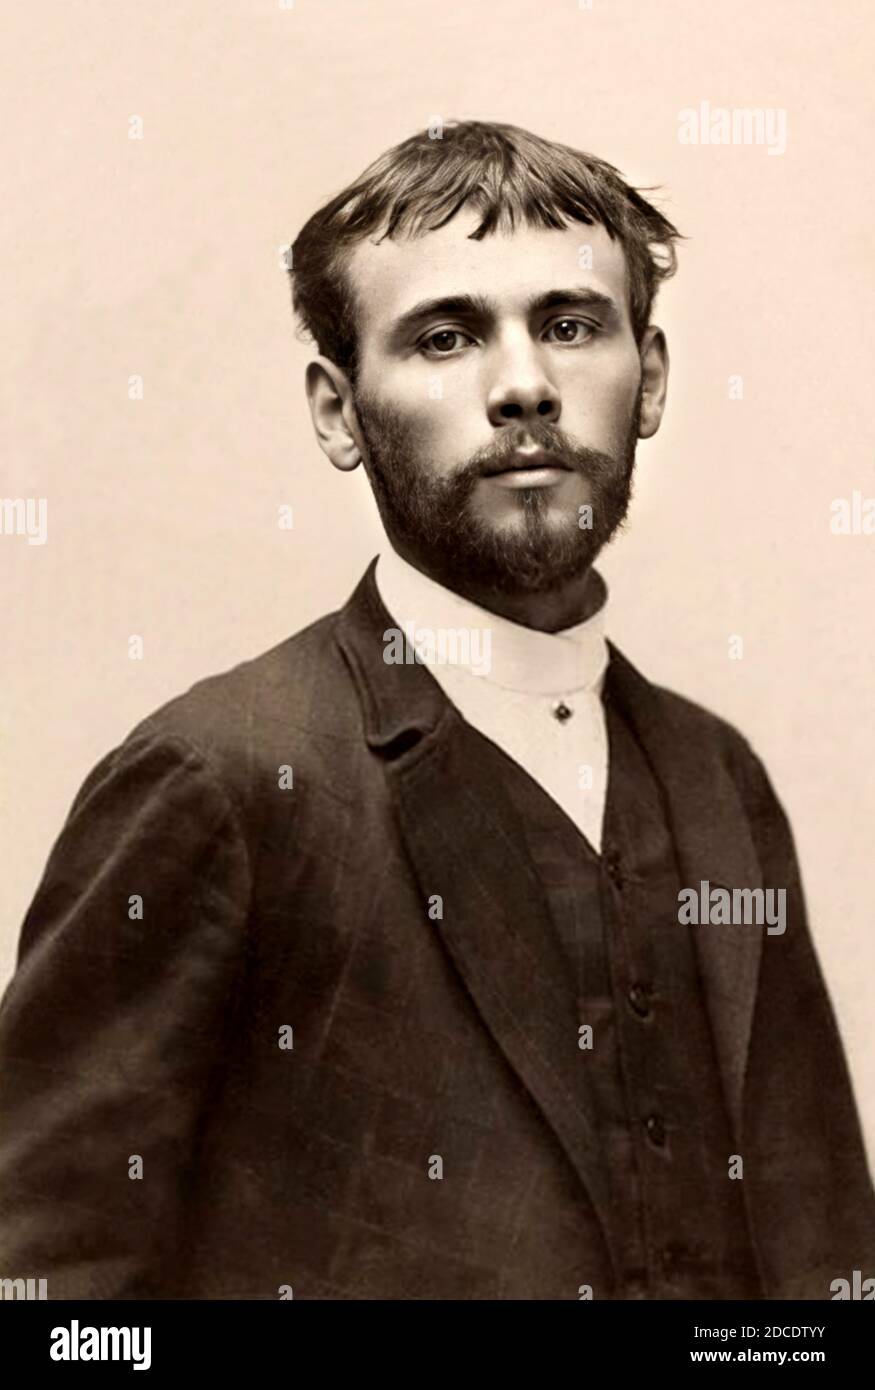 1882 ca., Vienna, AUSTRIA : il più celebre pittore della secessione viennese GUSTAV KLIMT ( 1862 - 1918 ) . Foto fotografo sconosciuto . - RITRATTO - ritratto - barba - ARTE - ARTI VISIVE - ARTI VISIVE - PITTORE - SECESSIONE VIENNESE - VIENNA - AUSTRIA - ARTI VISIVE - ARTI VISIVE - personalità da giovane - giovani - personalità quando era giovane --- Archivio GBB Foto Stock